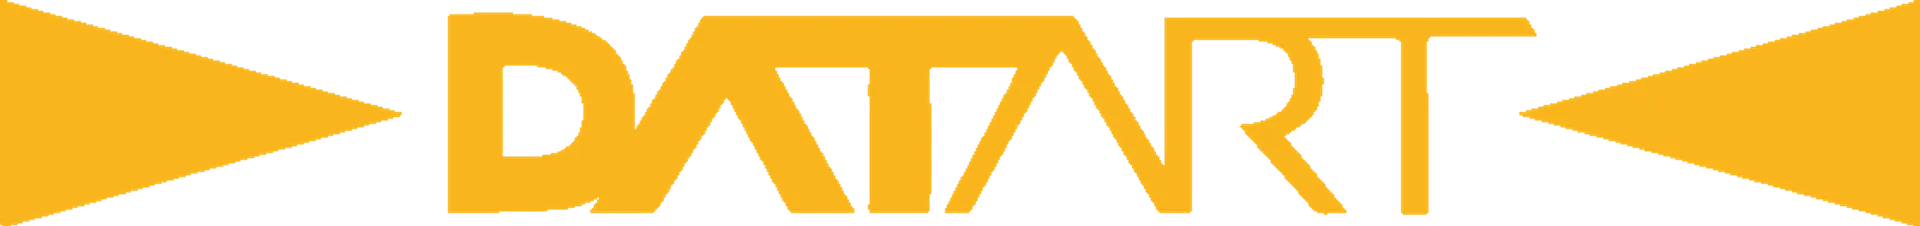 DATART logo